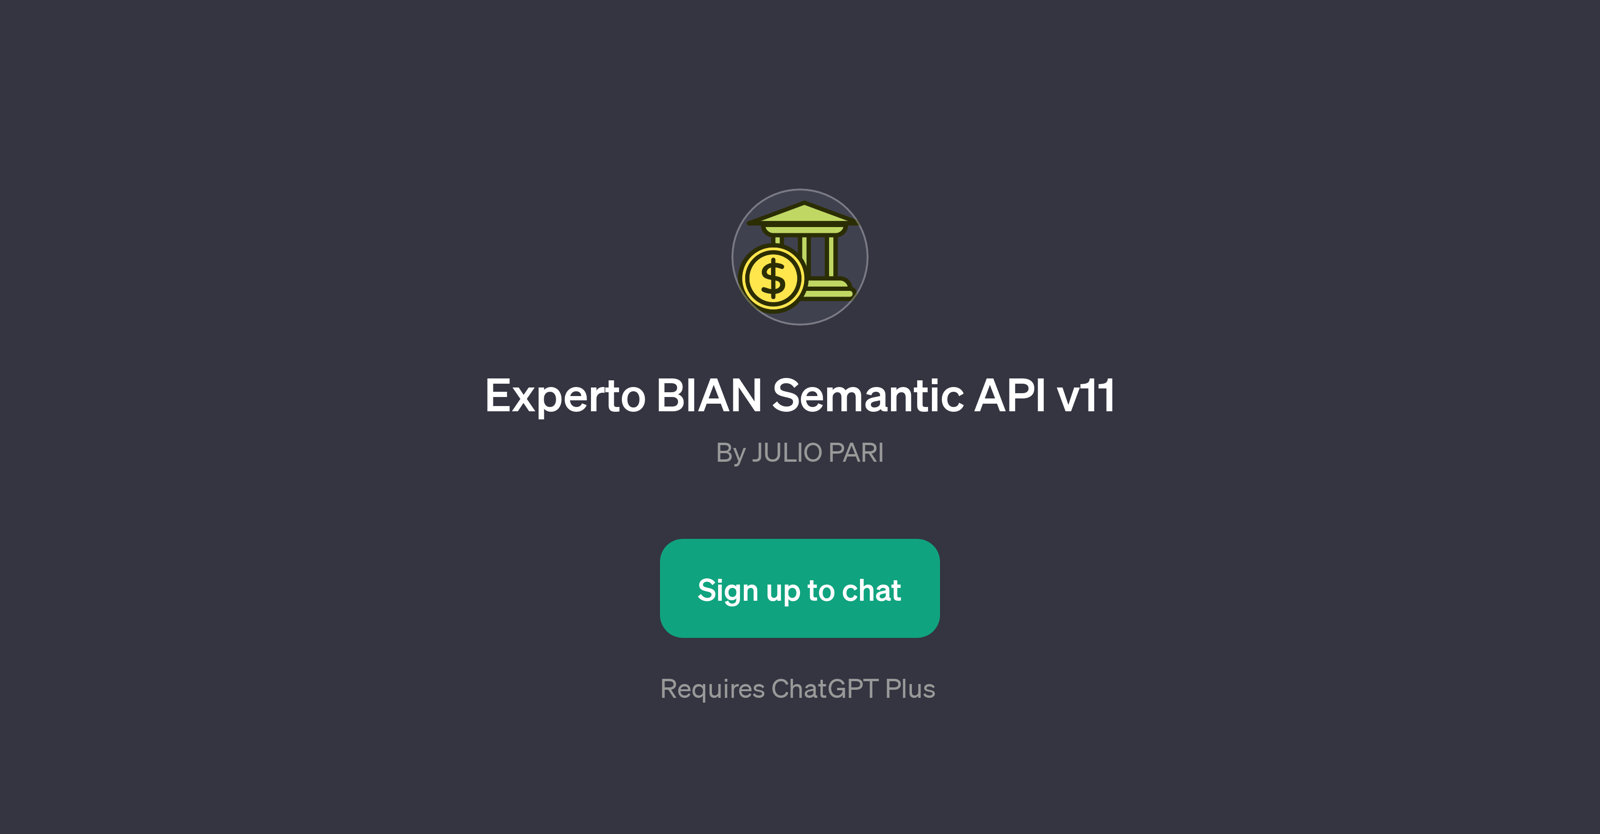 Experto BIAN Semantic API v11 website